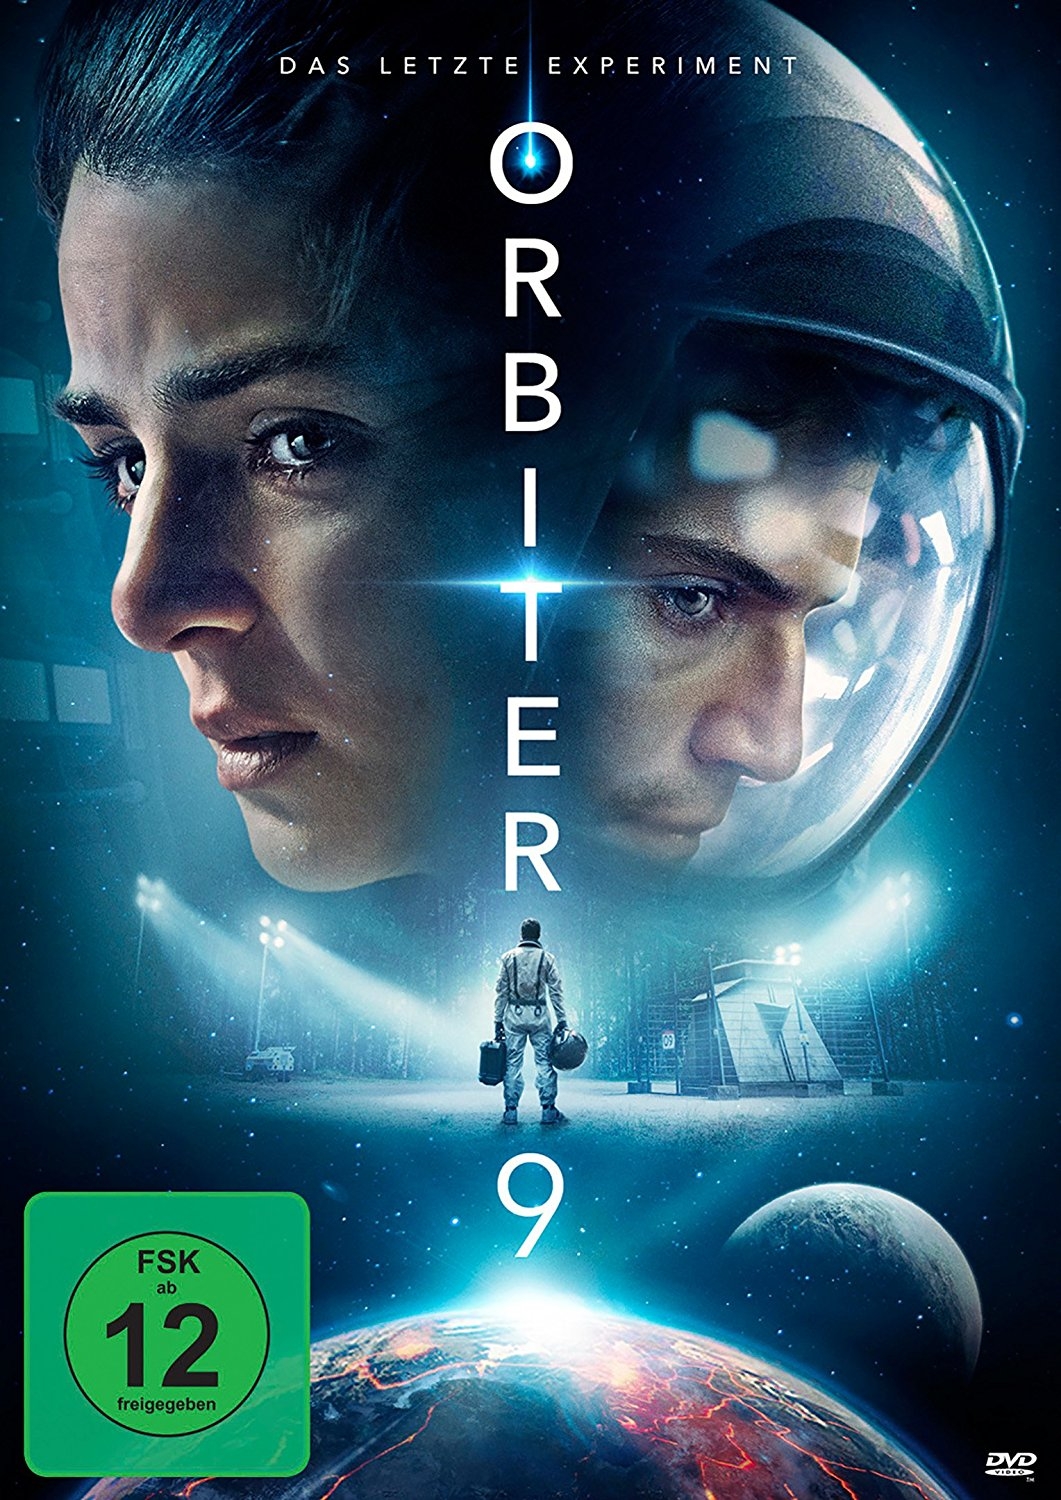 dvd 03 18 Orbiter19